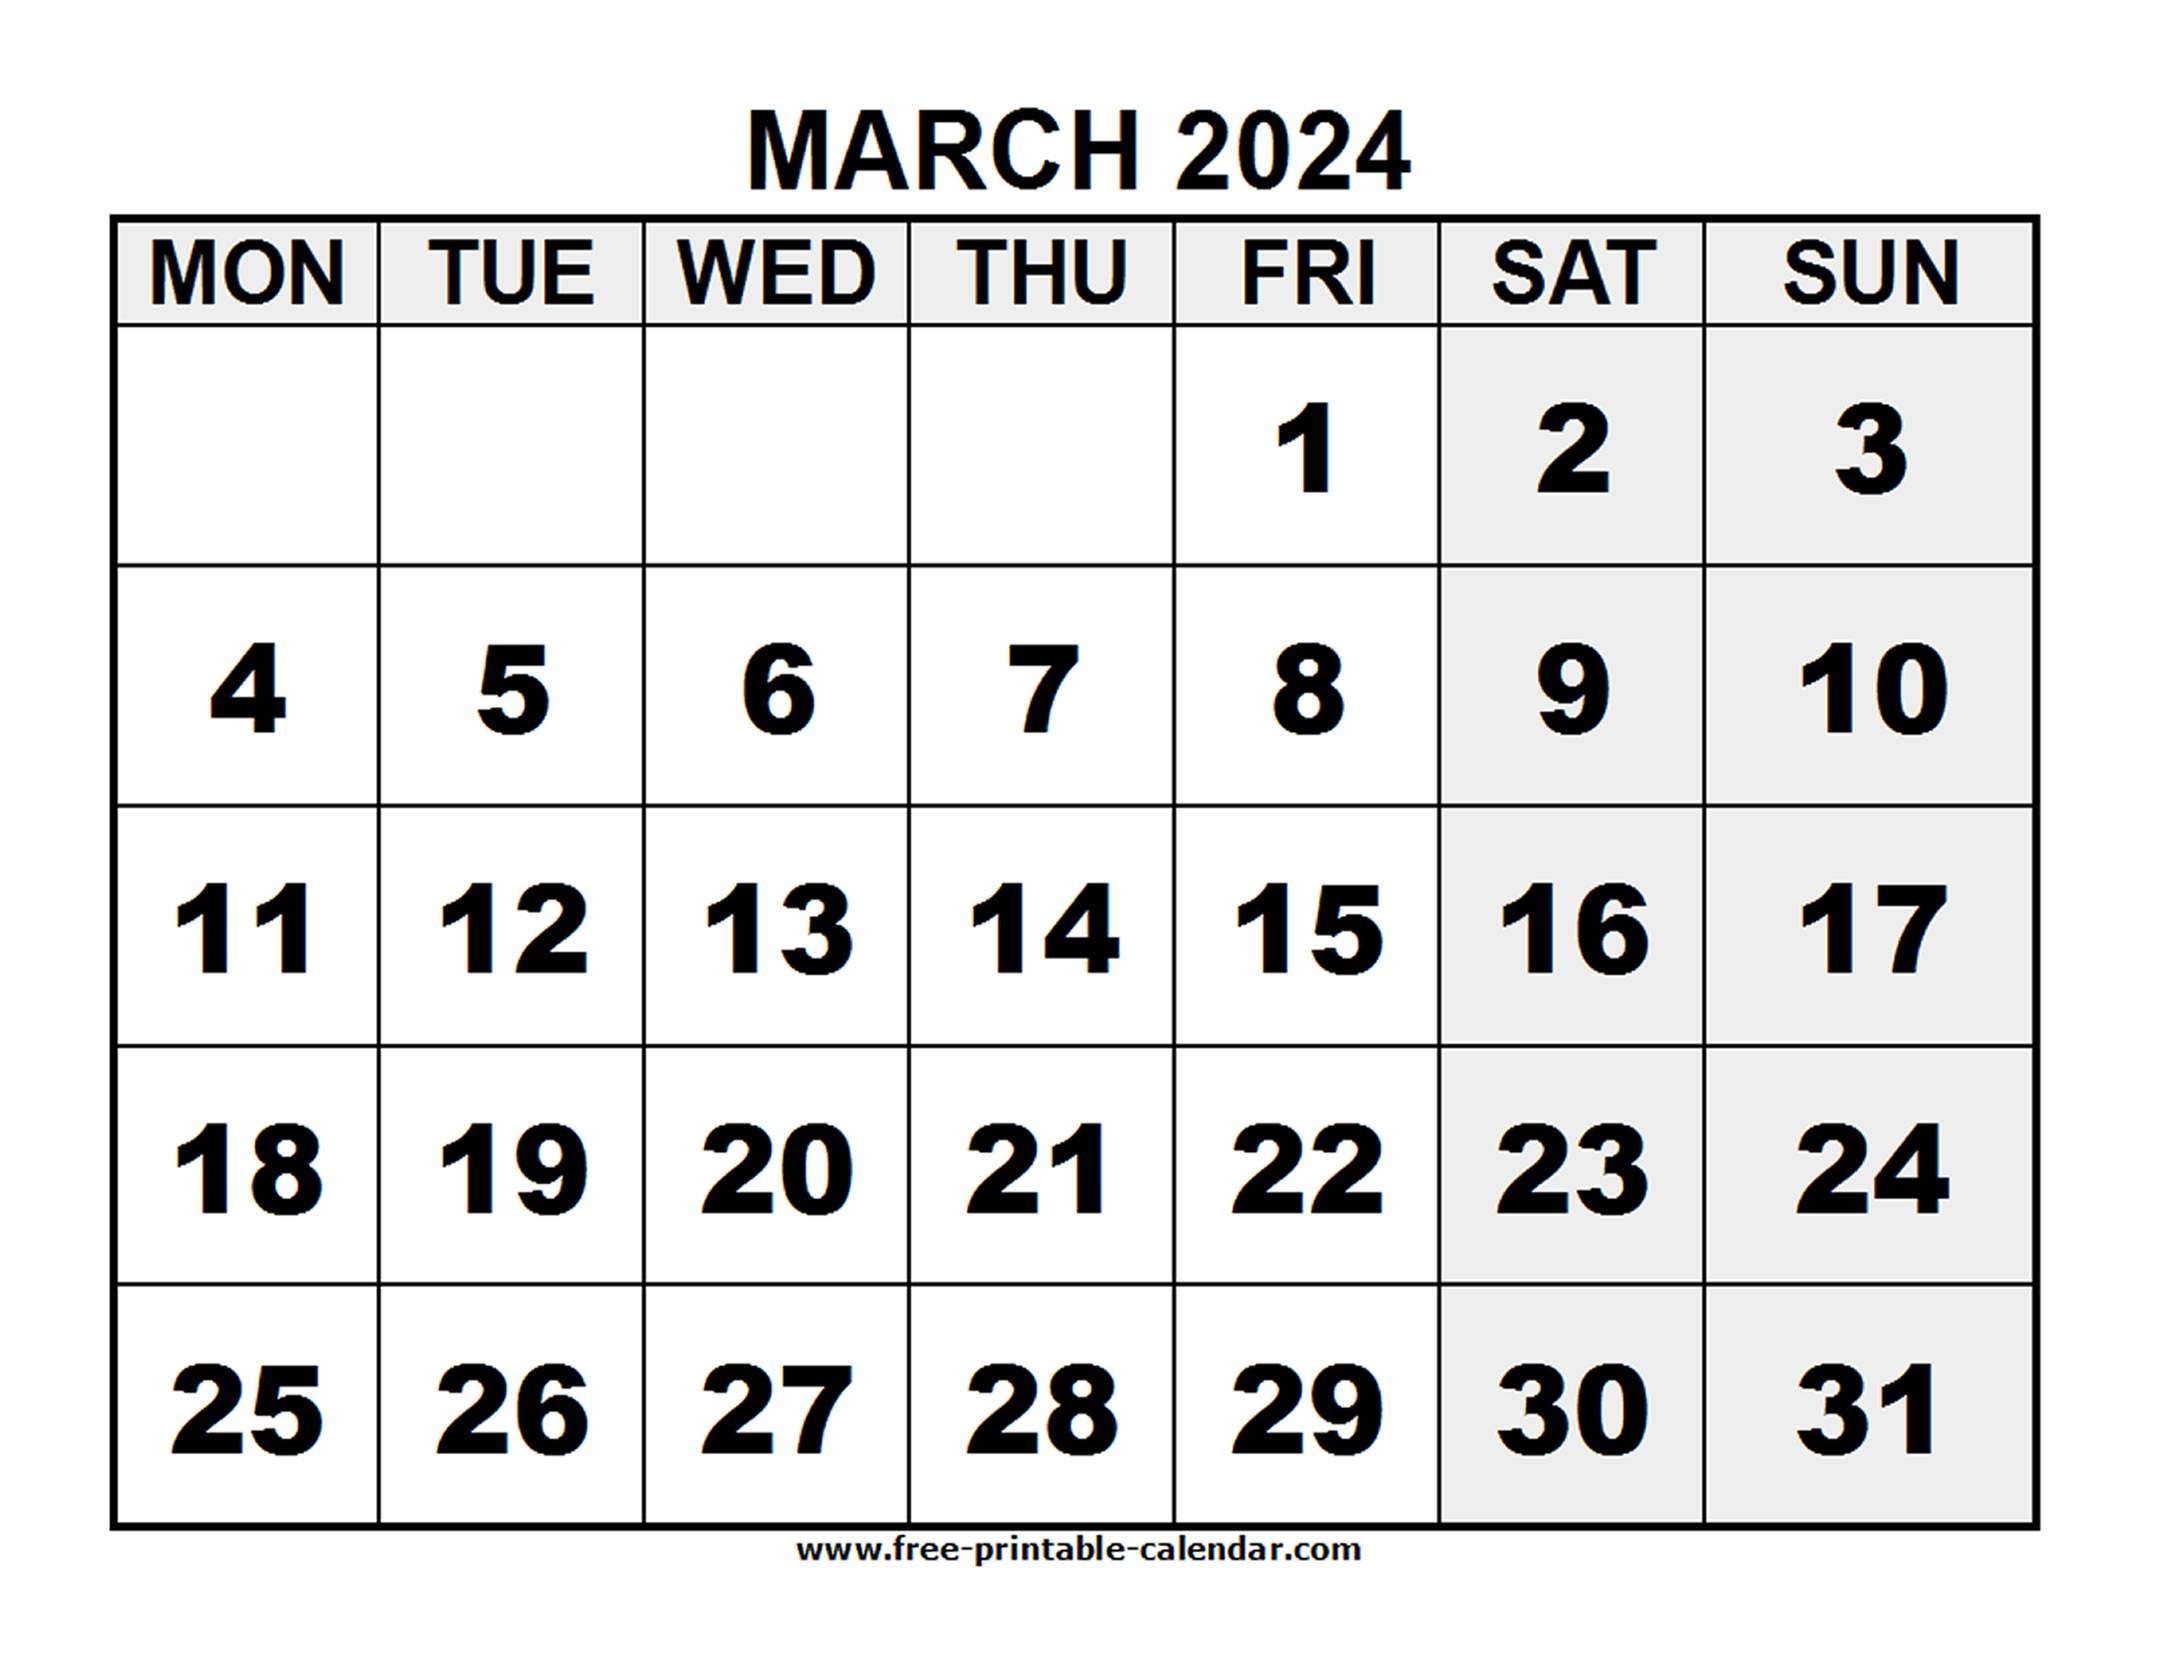 2024 March - Free-printable-calendar.com